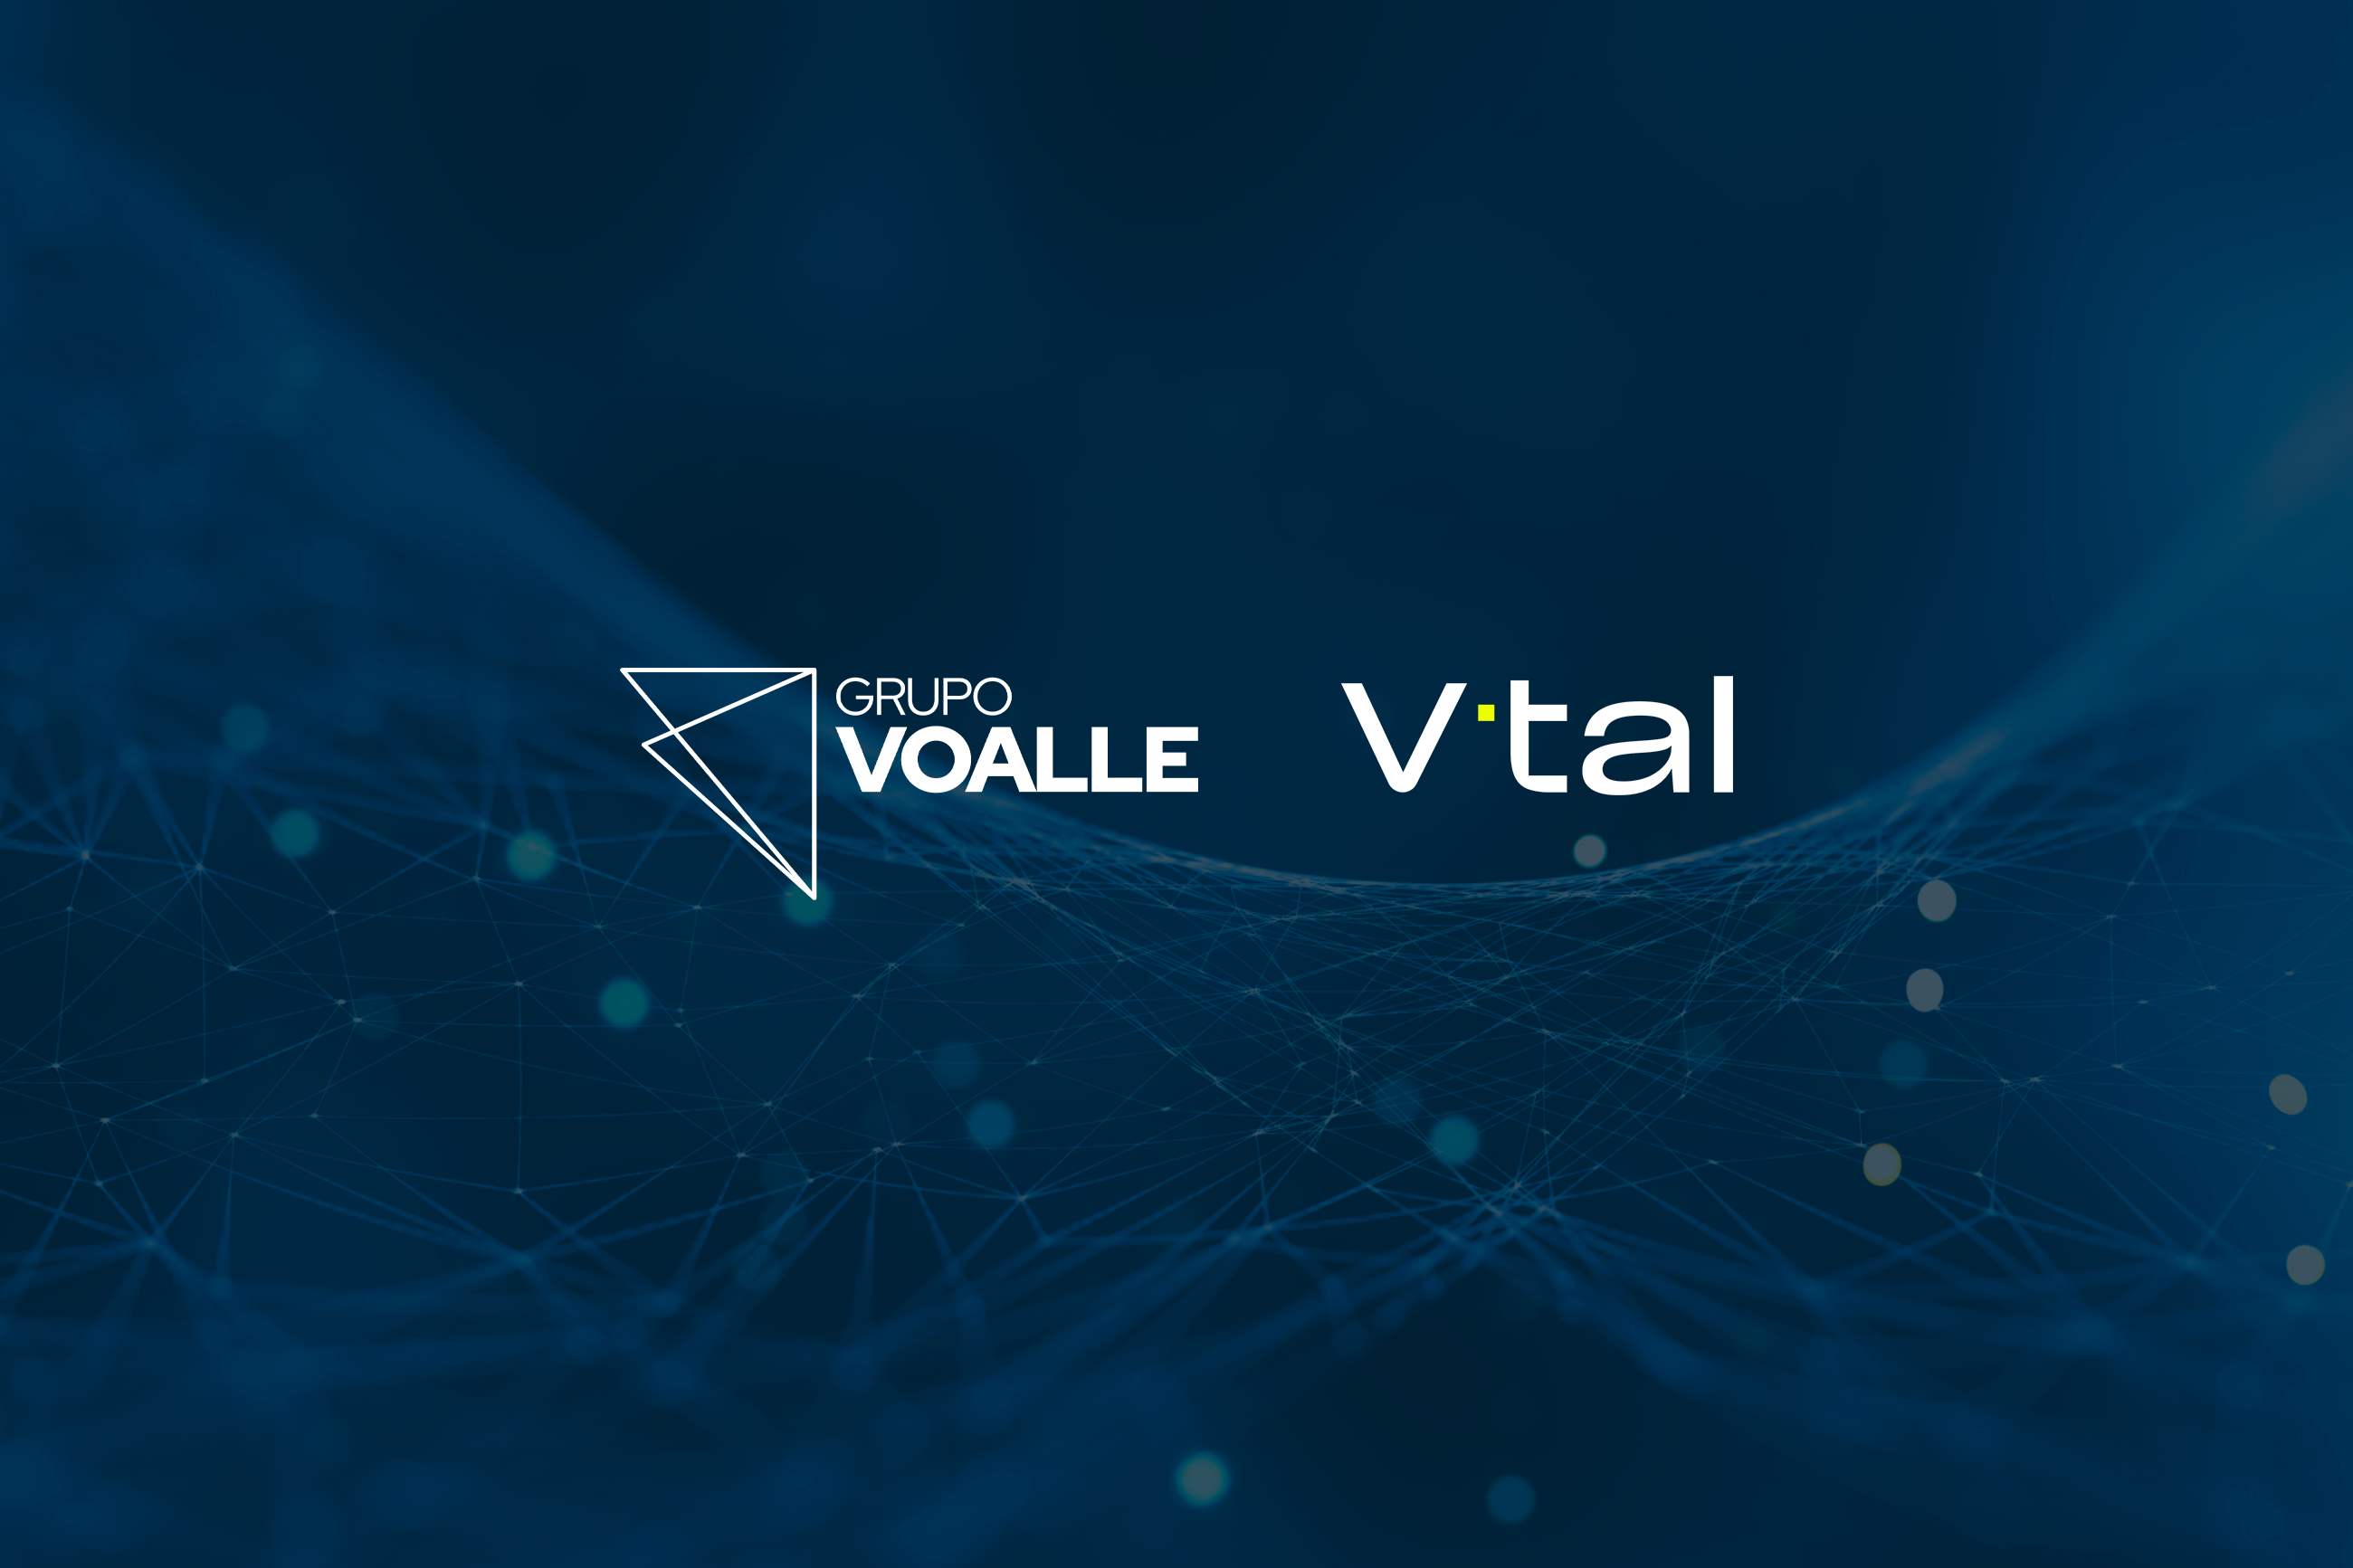 Conheça nossa aliança com a V.tal: parceria estratégica para integração com  a rede neutra - Grupo Voalle